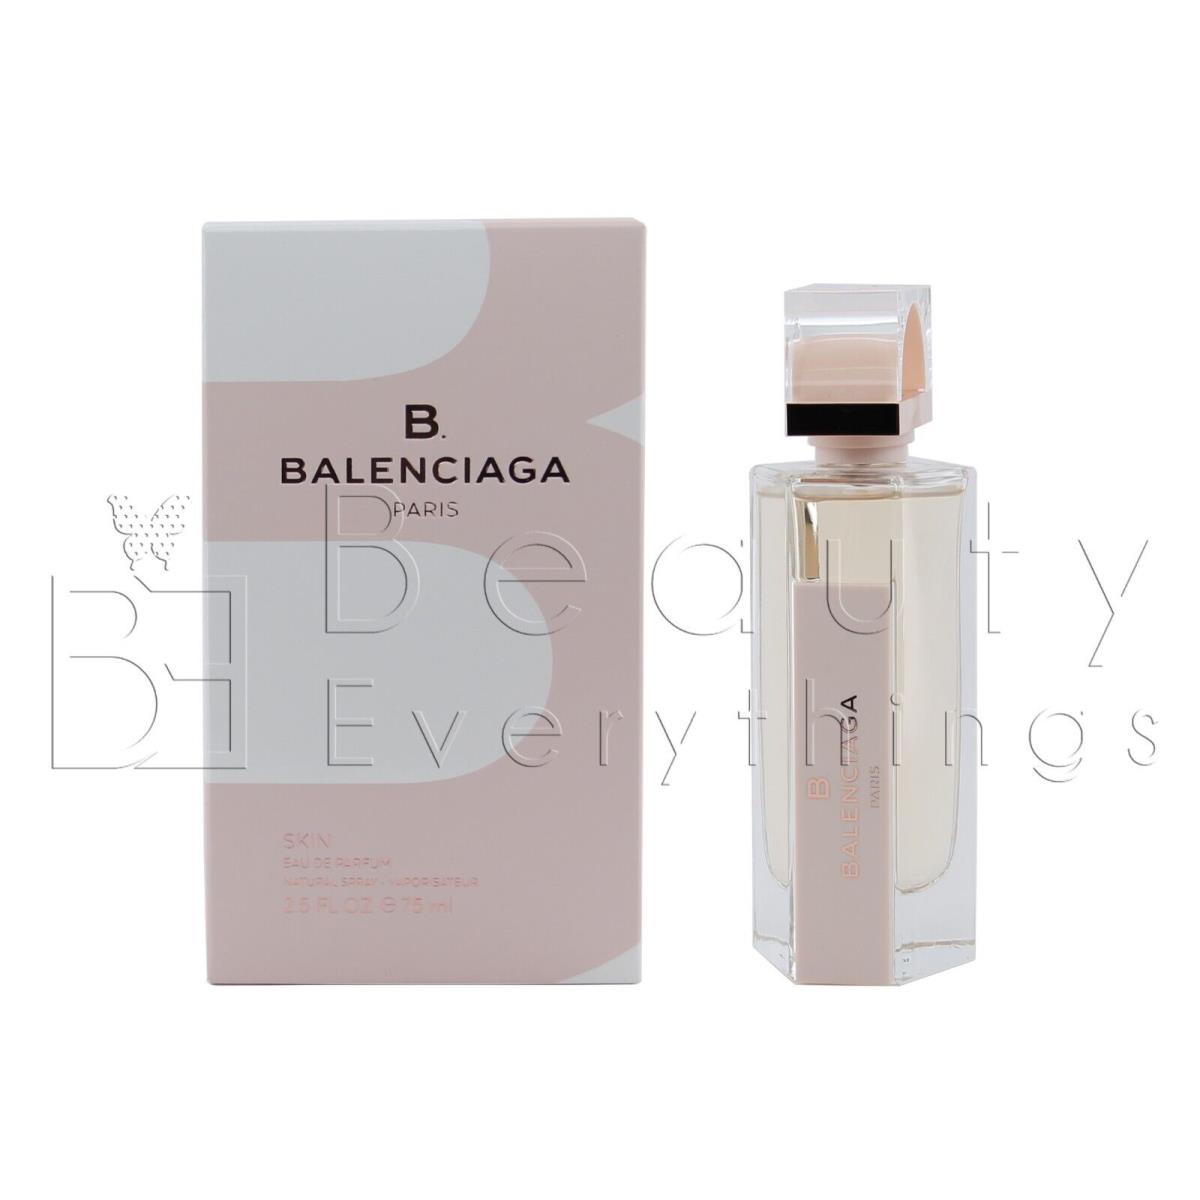 B Balenciaga Skin by Balenciaga 2.5oz / 75ml Edp Spray For Women